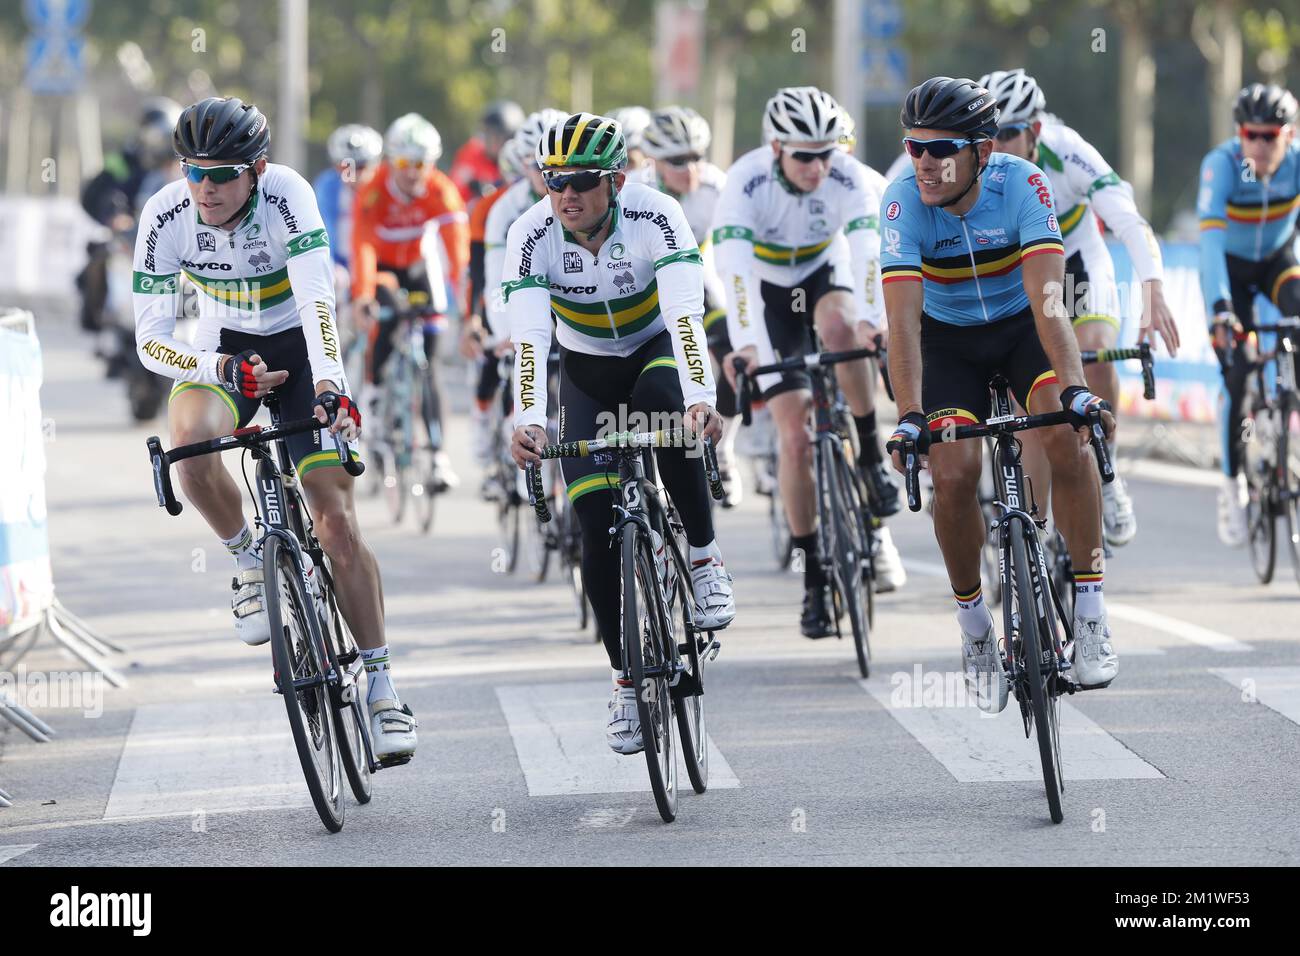 Australische Rohan Dennis, australische Simon Gerrans und belgische Philippe Gilbert, die am Donnerstag, den 25. September 2014, bei der UCI-Radweltmeisterschaft in Ponferrada, Spanien, in Aktion gezeigt wurden. Stockfoto